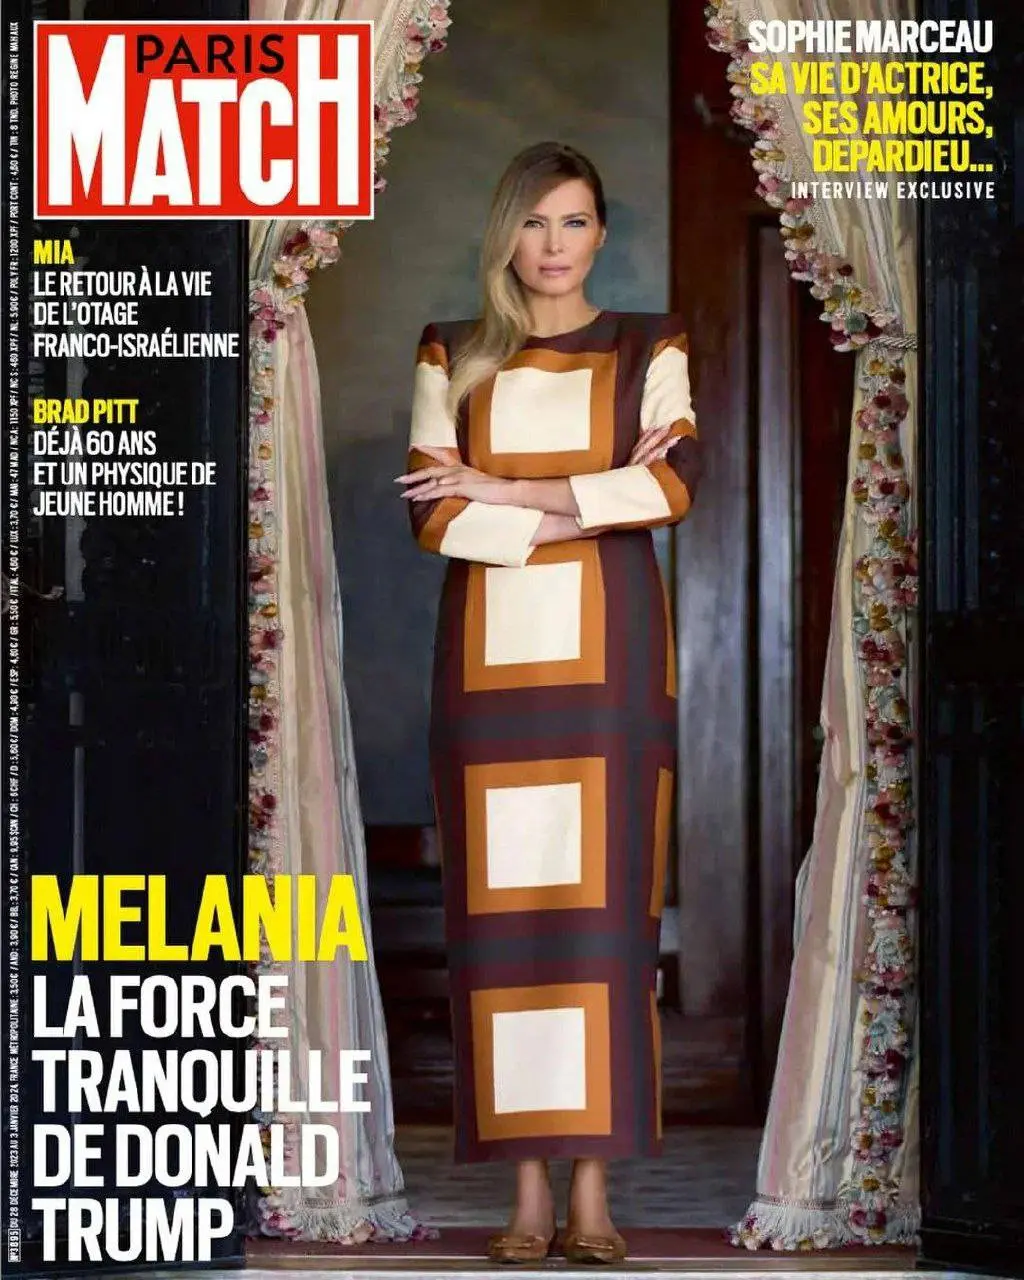 فتوشات های جدید ملانیا ترامپ روی مجله پاریس مچ